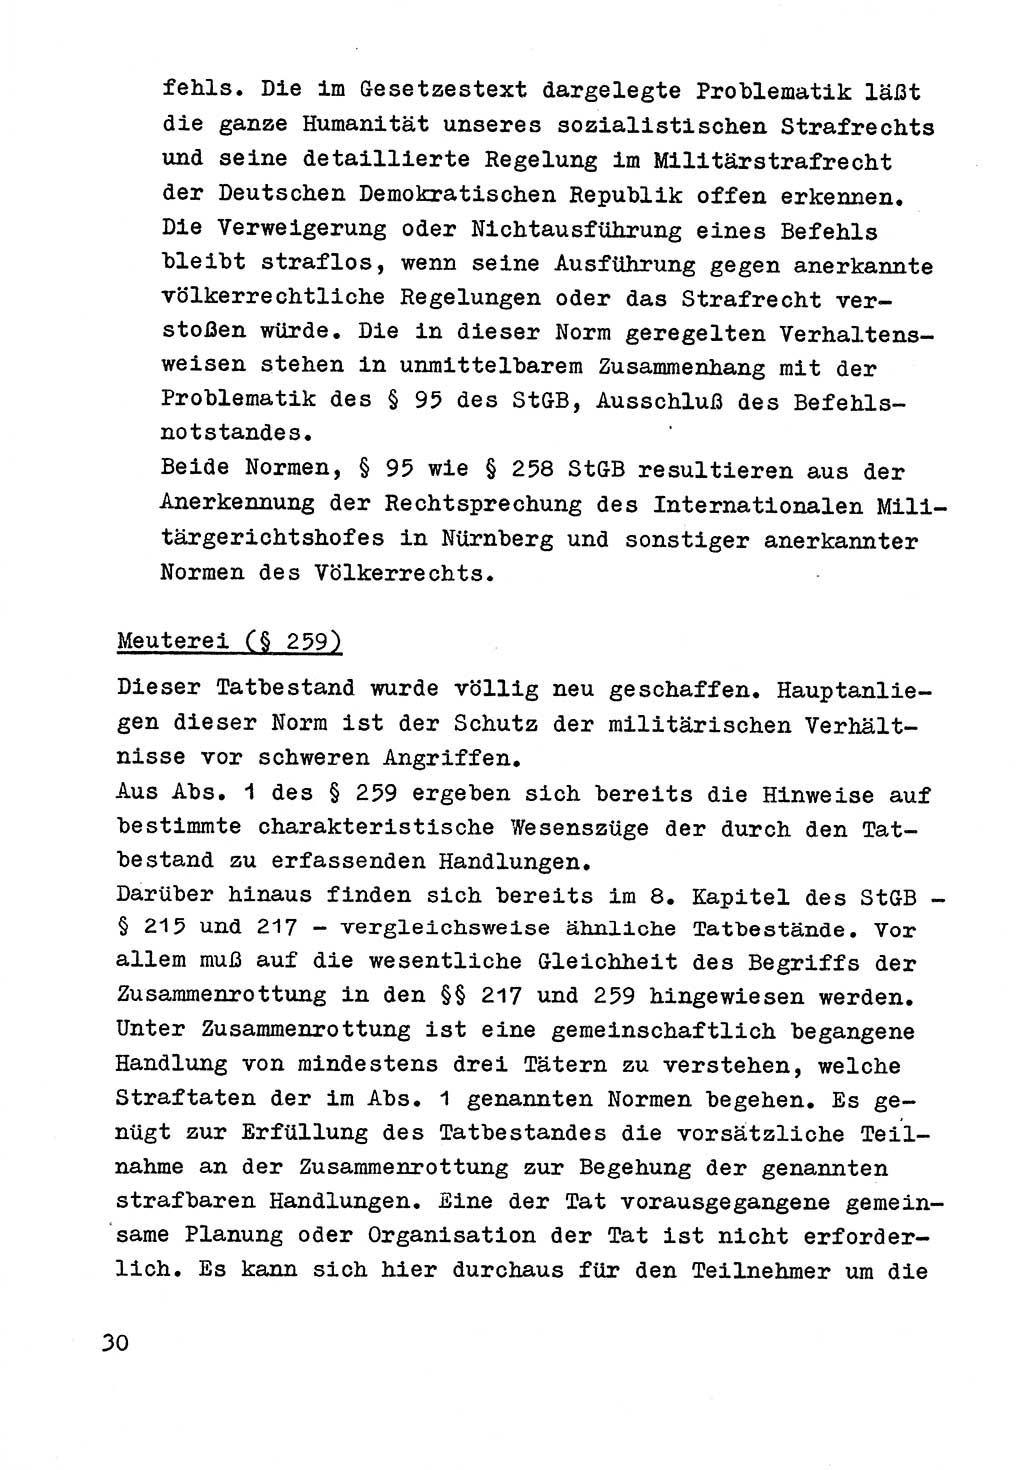 Strafrecht der DDR (Deutsche Demokratische Republik), Besonderer Teil, Lehrmaterial, Heft 9 1969, Seite 30 (Strafr. DDR BT Lehrmat. H. 9 1969, S. 30)